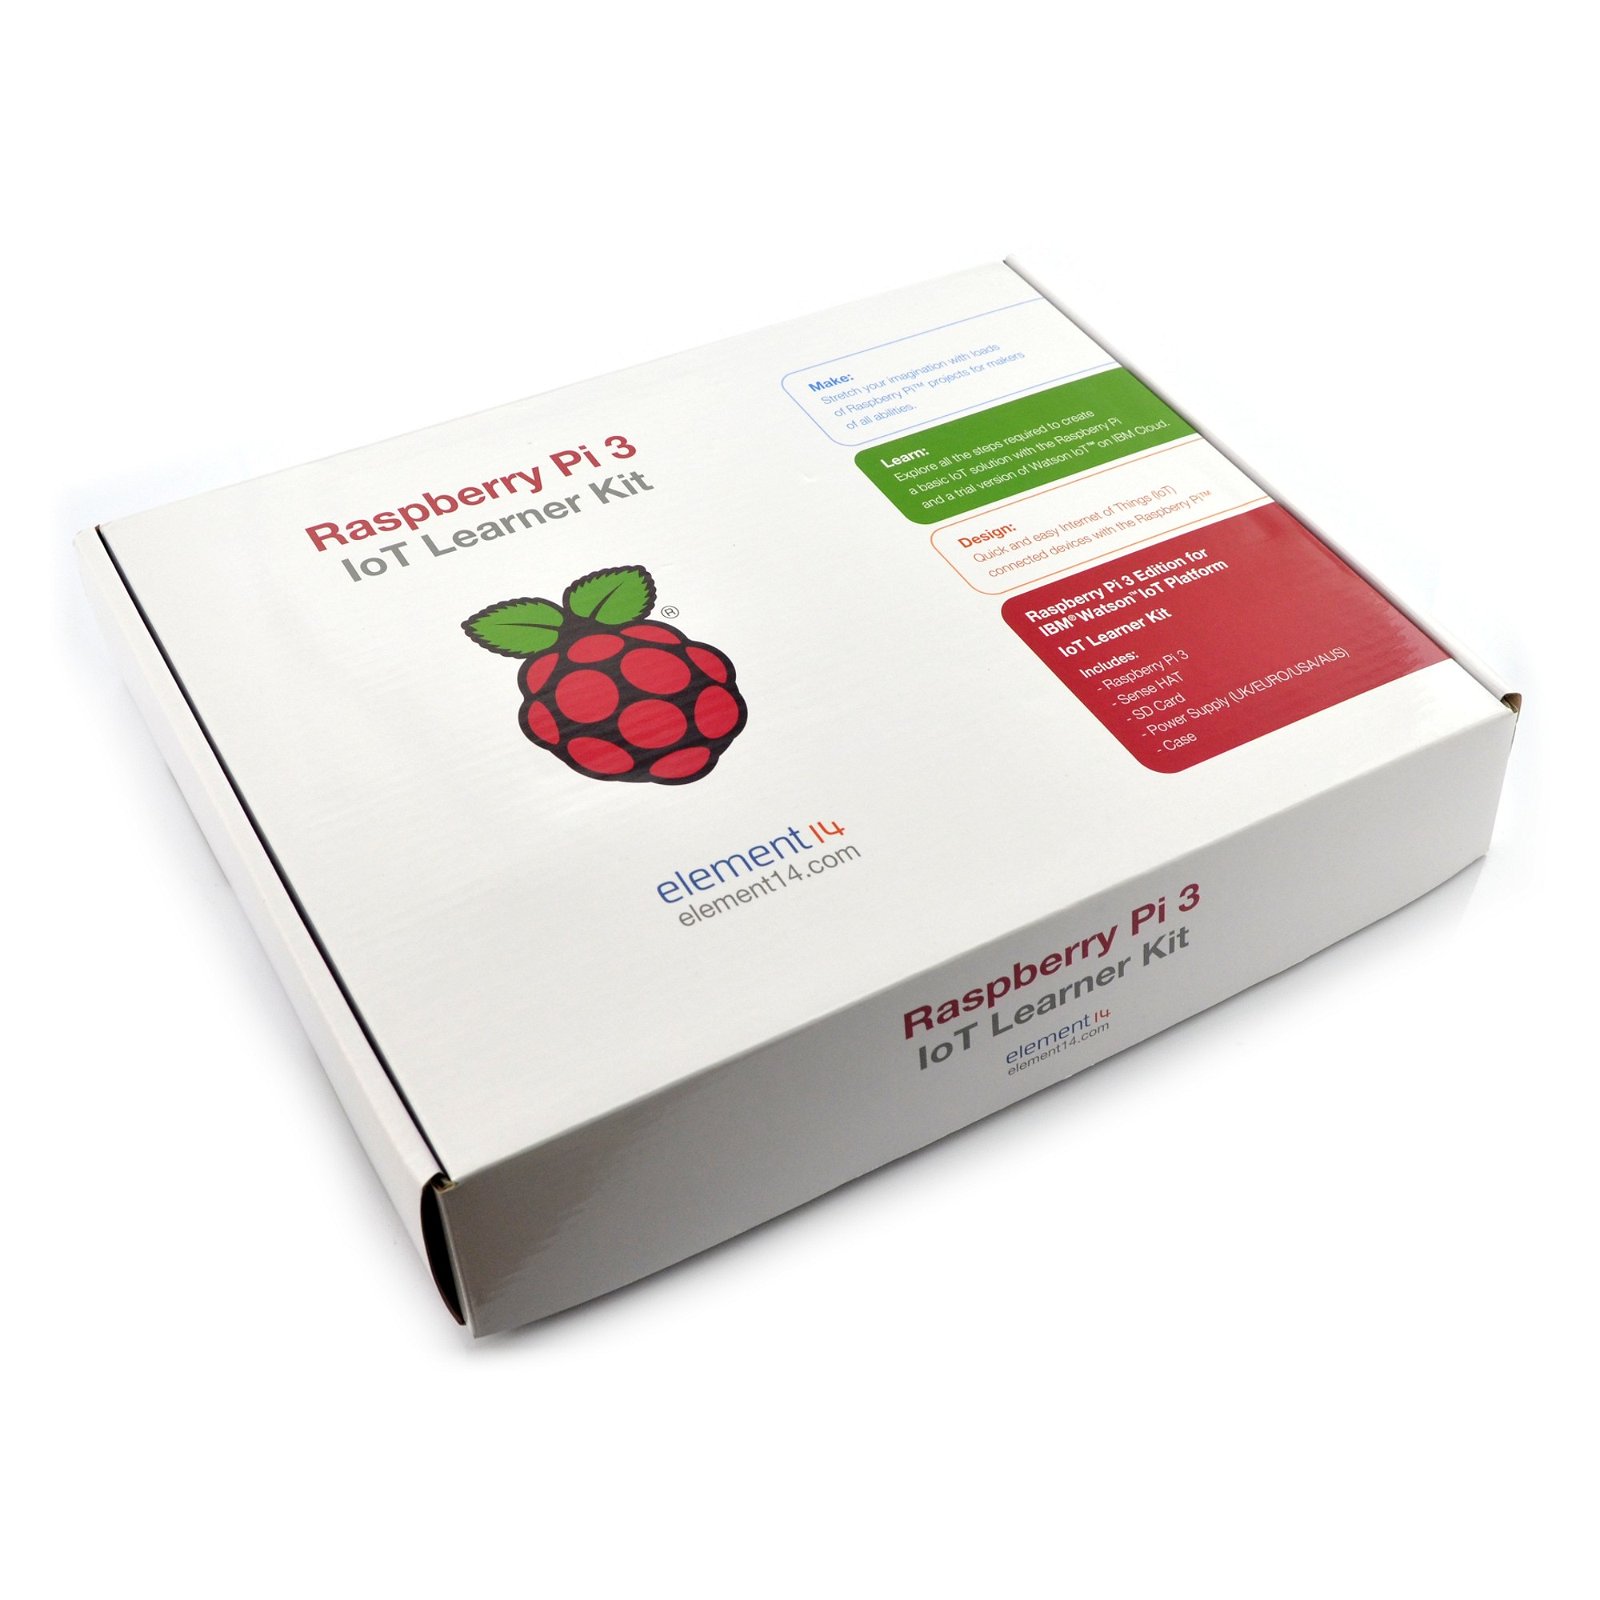 Raspberry Pi 3 IoT Learner Kit